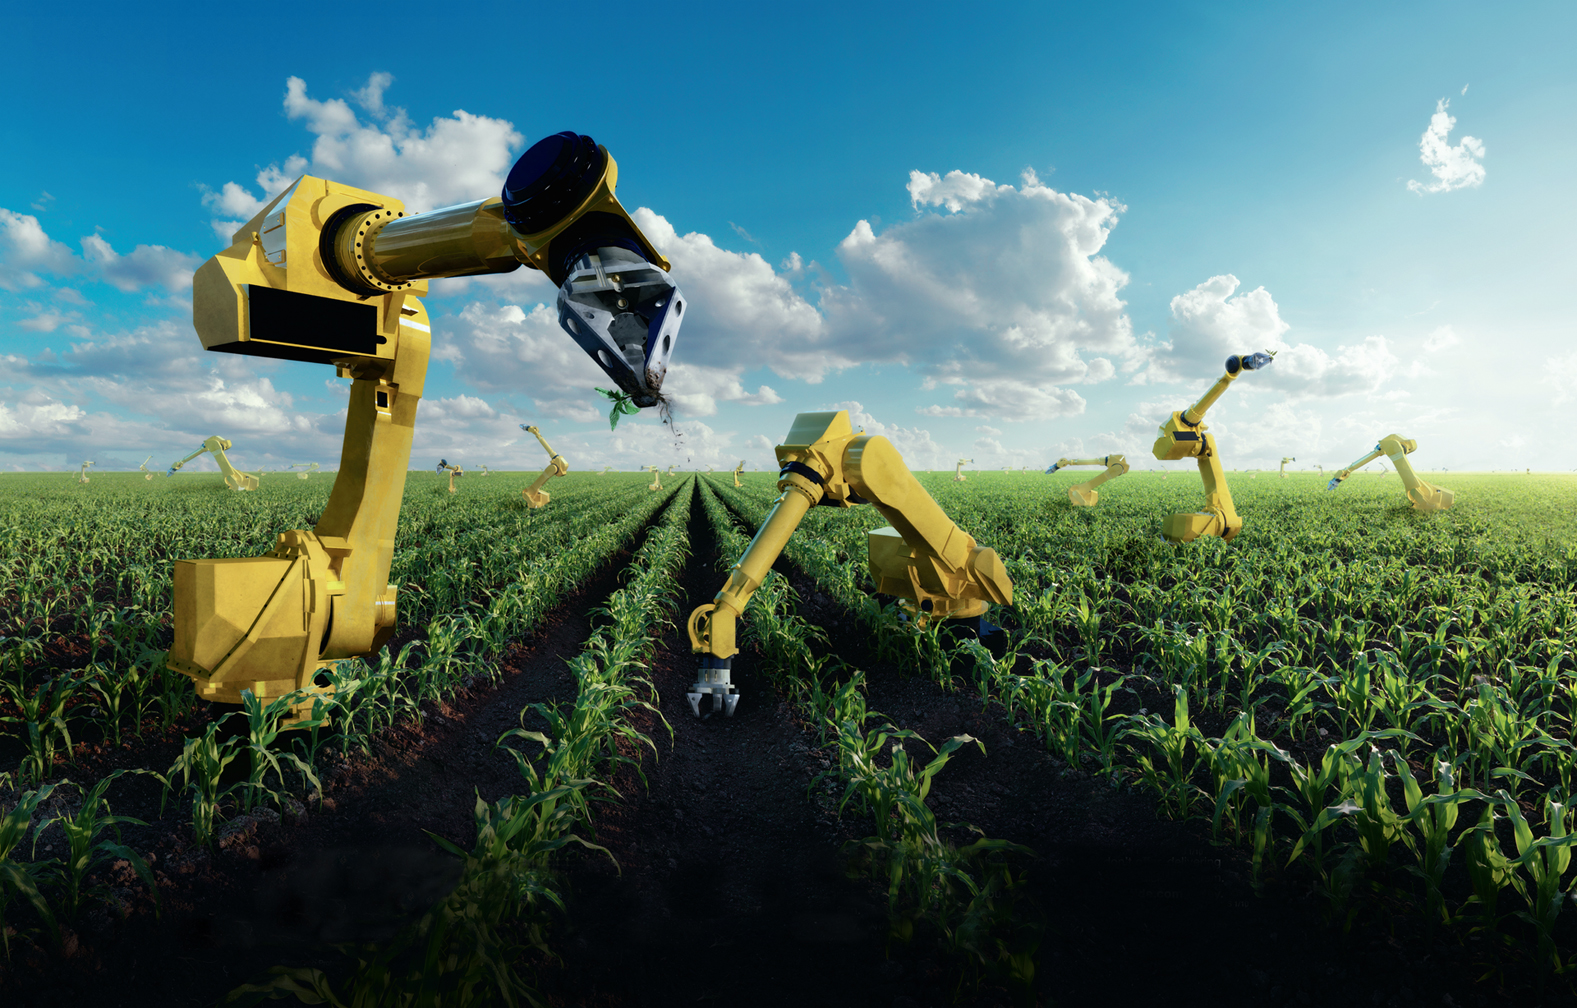 Ии в сельском хозяйстве. Роботы в сельском хозяйстве. Инновации в сельском хозяйстве. Роботизация сельского хозяйства. Сельское хозяйство будущего.